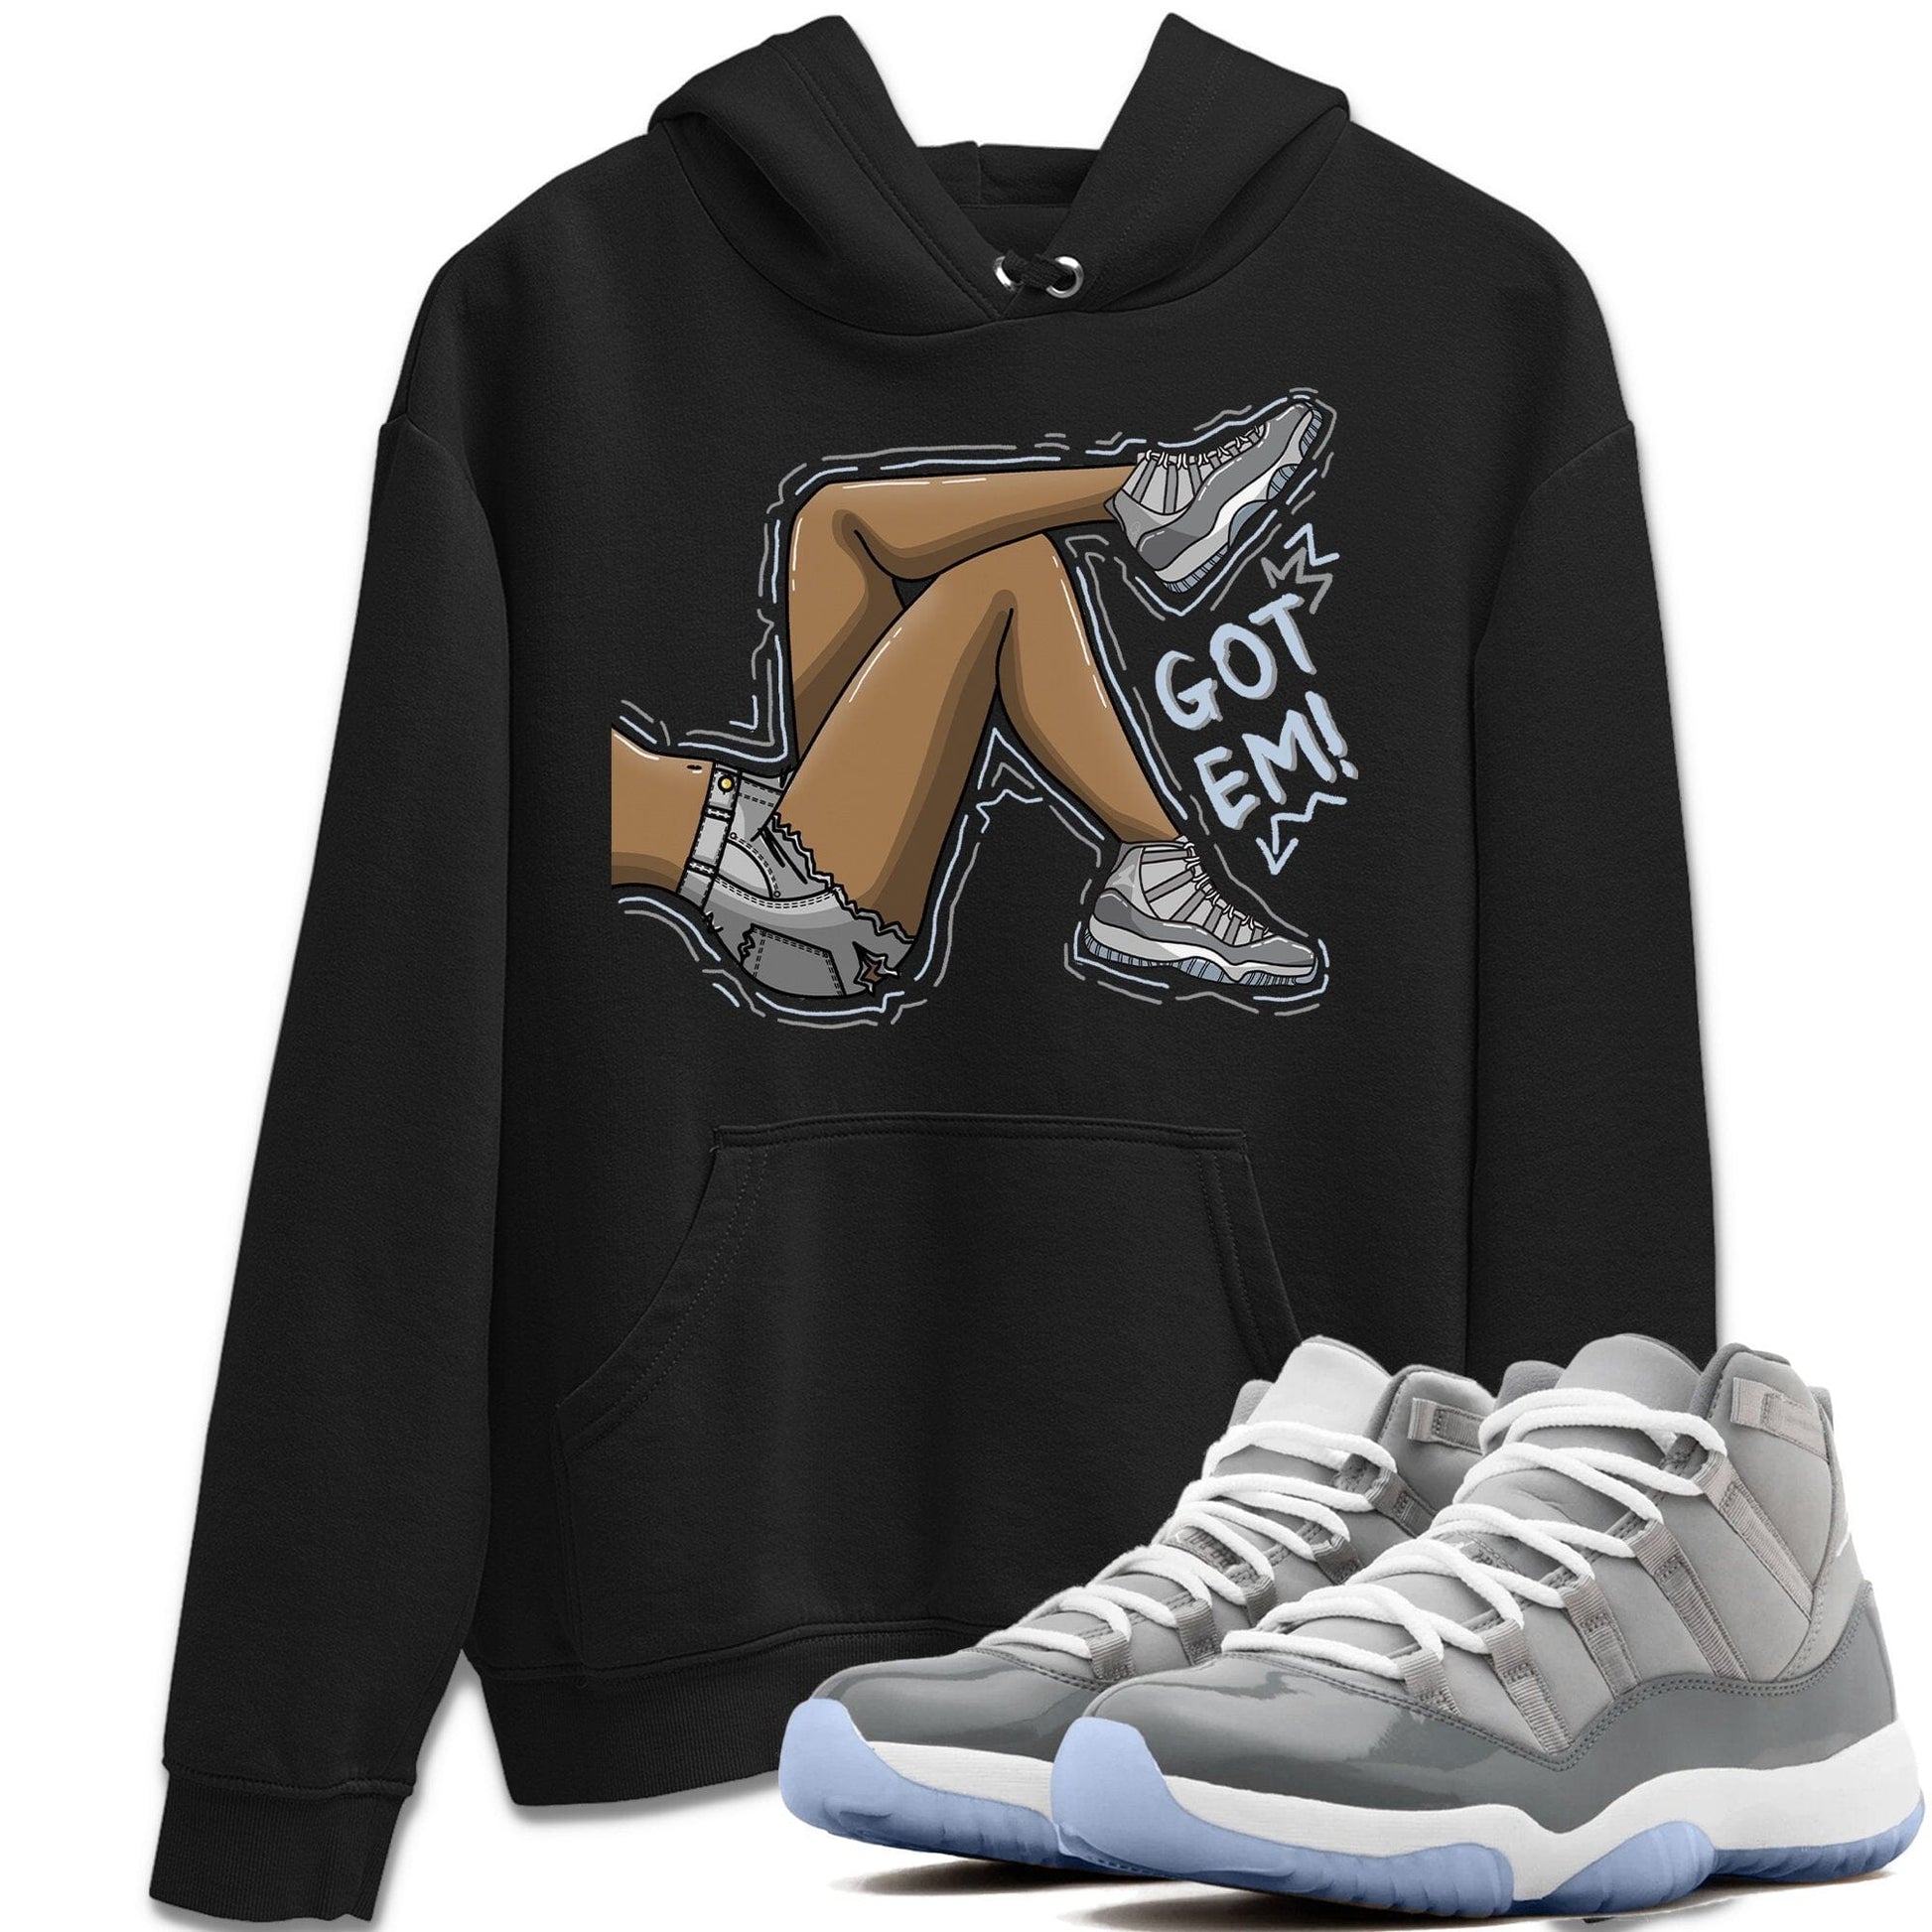 Jordan 11 Cool Grey Sneaker Match Tees Got Em Legs Sneaker Tees Jordan 11 Cool Grey Sneaker Release Tees Unisex Shirts